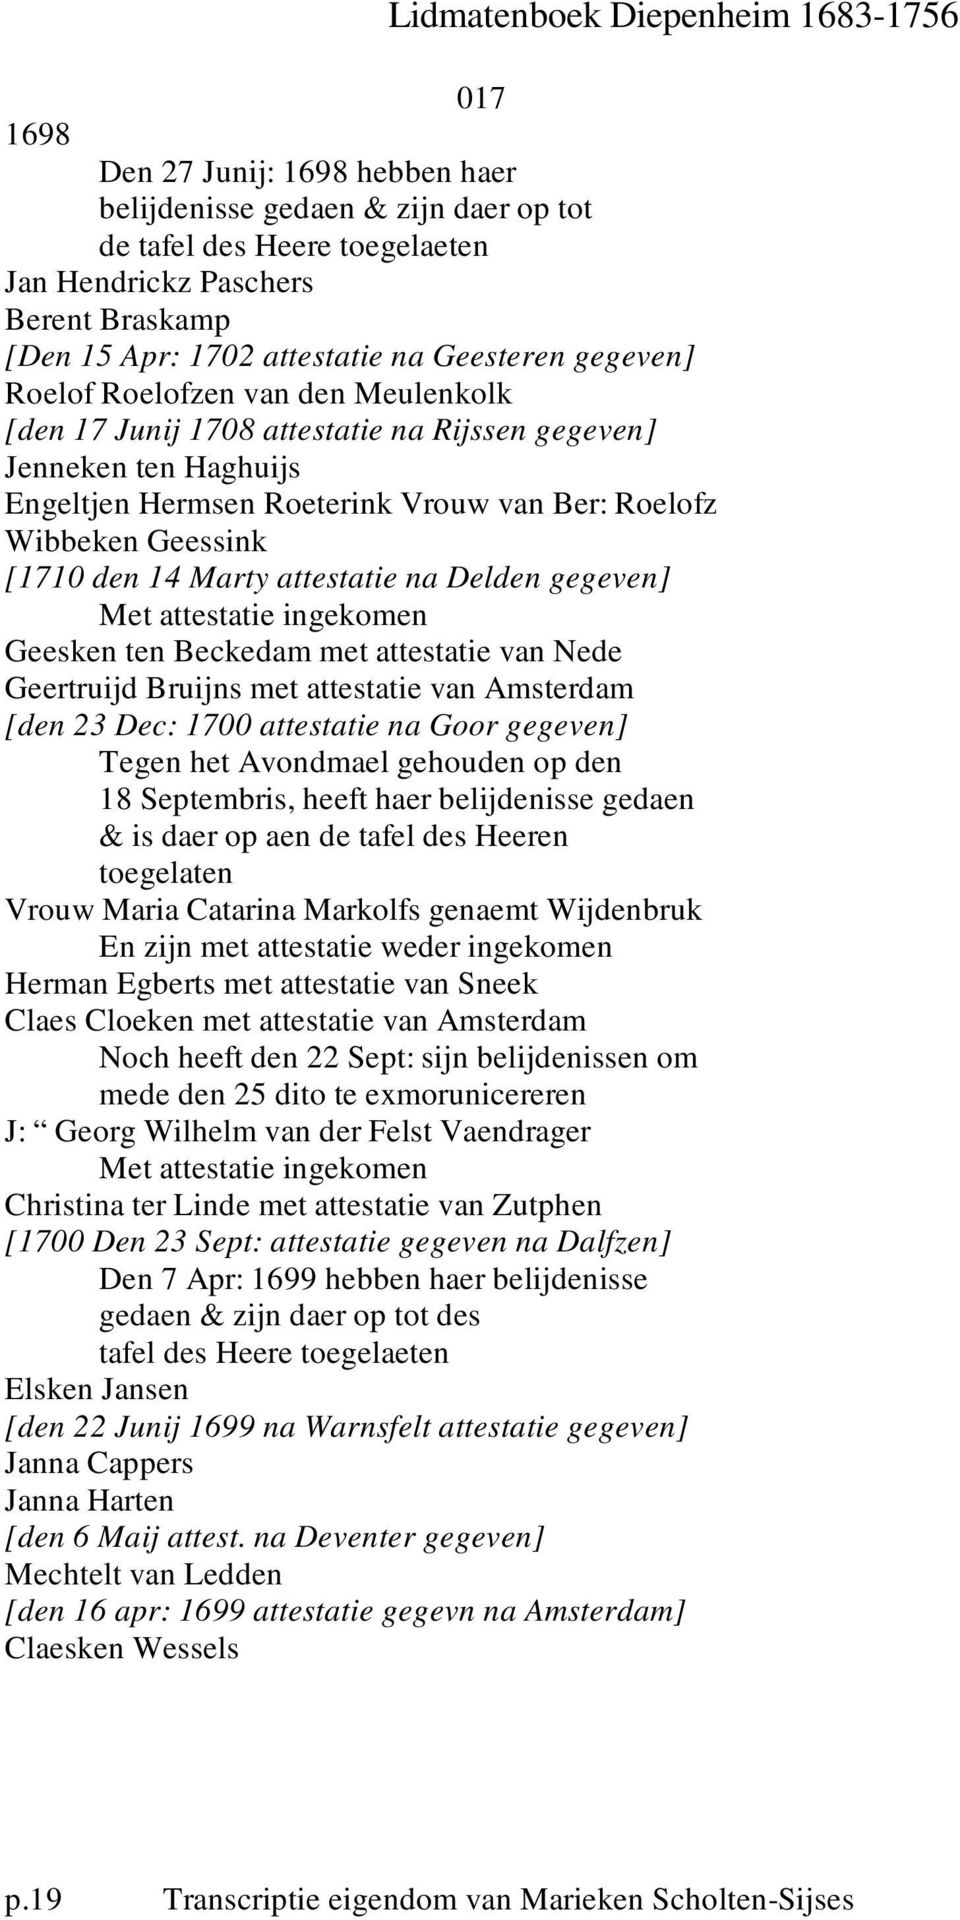 attestatie na Delden gegeven] Geesken ten Beckedam met attestatie van Nede Geertruijd Bruijns met attestatie van Amsterdam [den 23 Dec: 1700 attestatie na Goor gegeven] Tegen het Avondmael gehouden